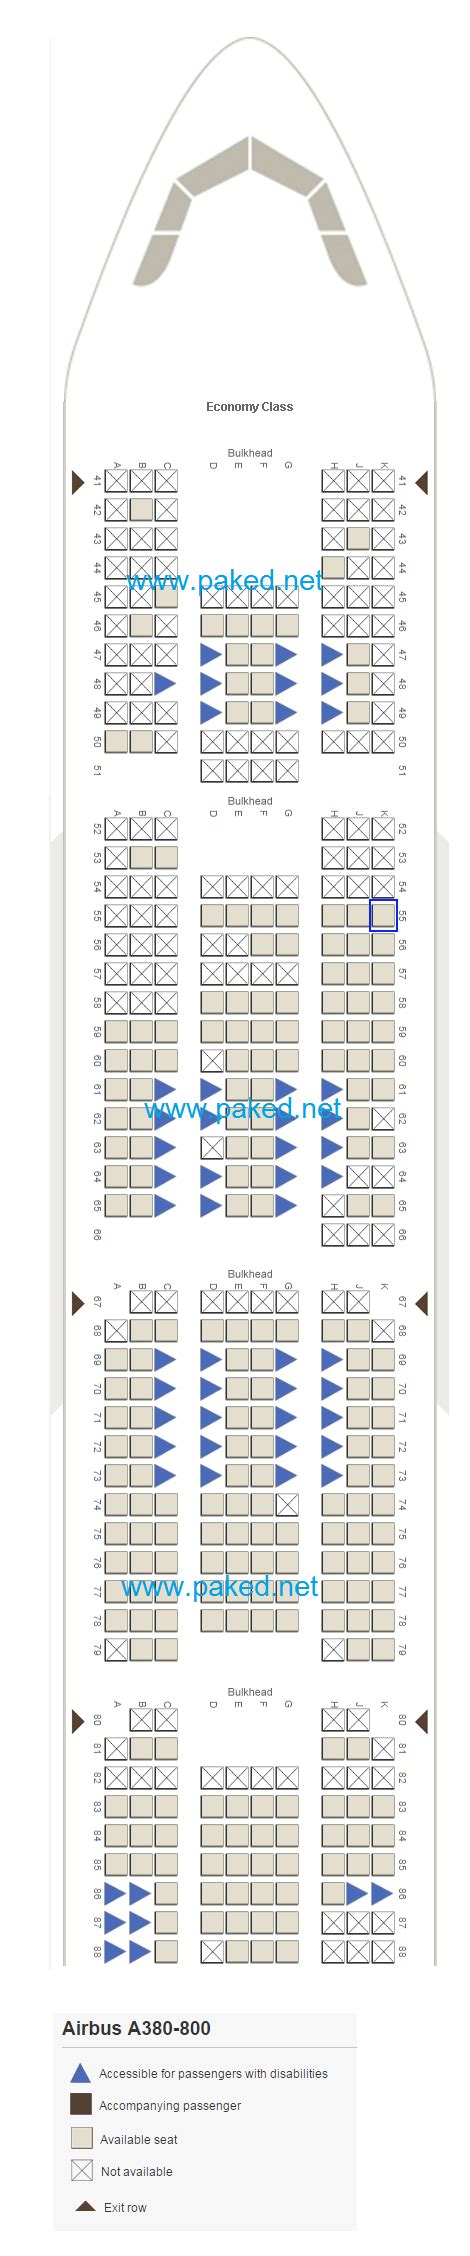 Seating Plan Airbus A380 800 Emirates